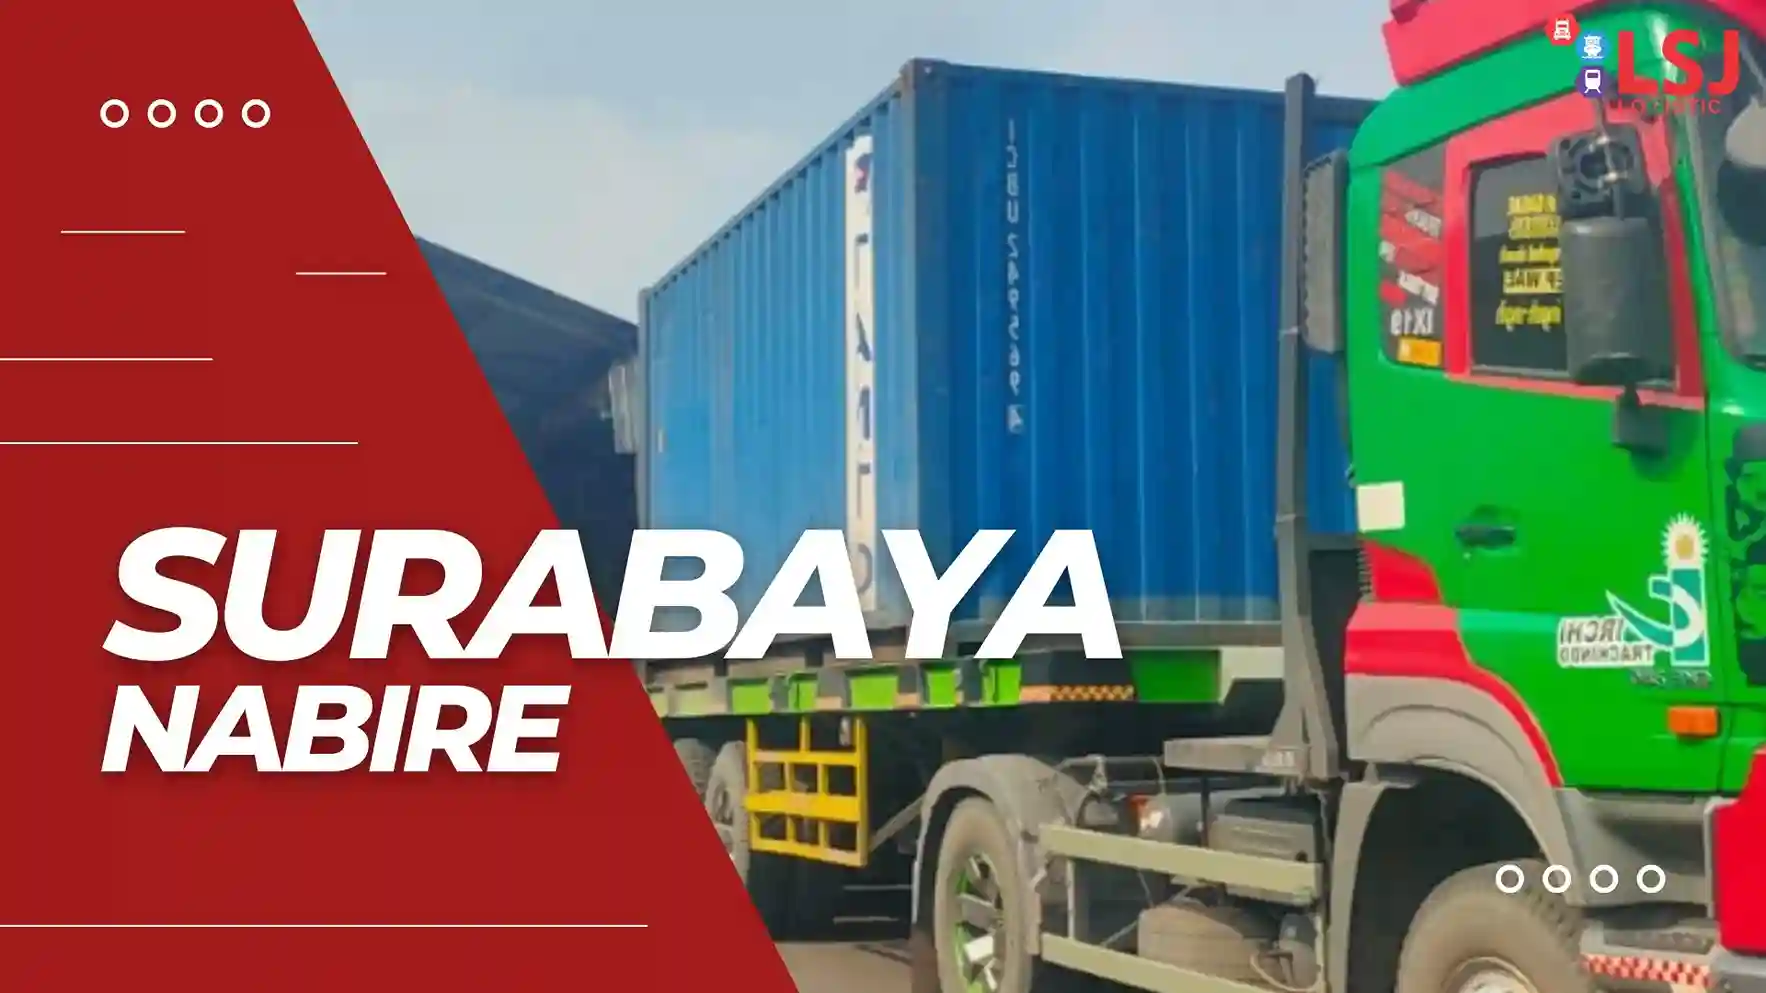 Ekspedisi Container Surabaya Nabire